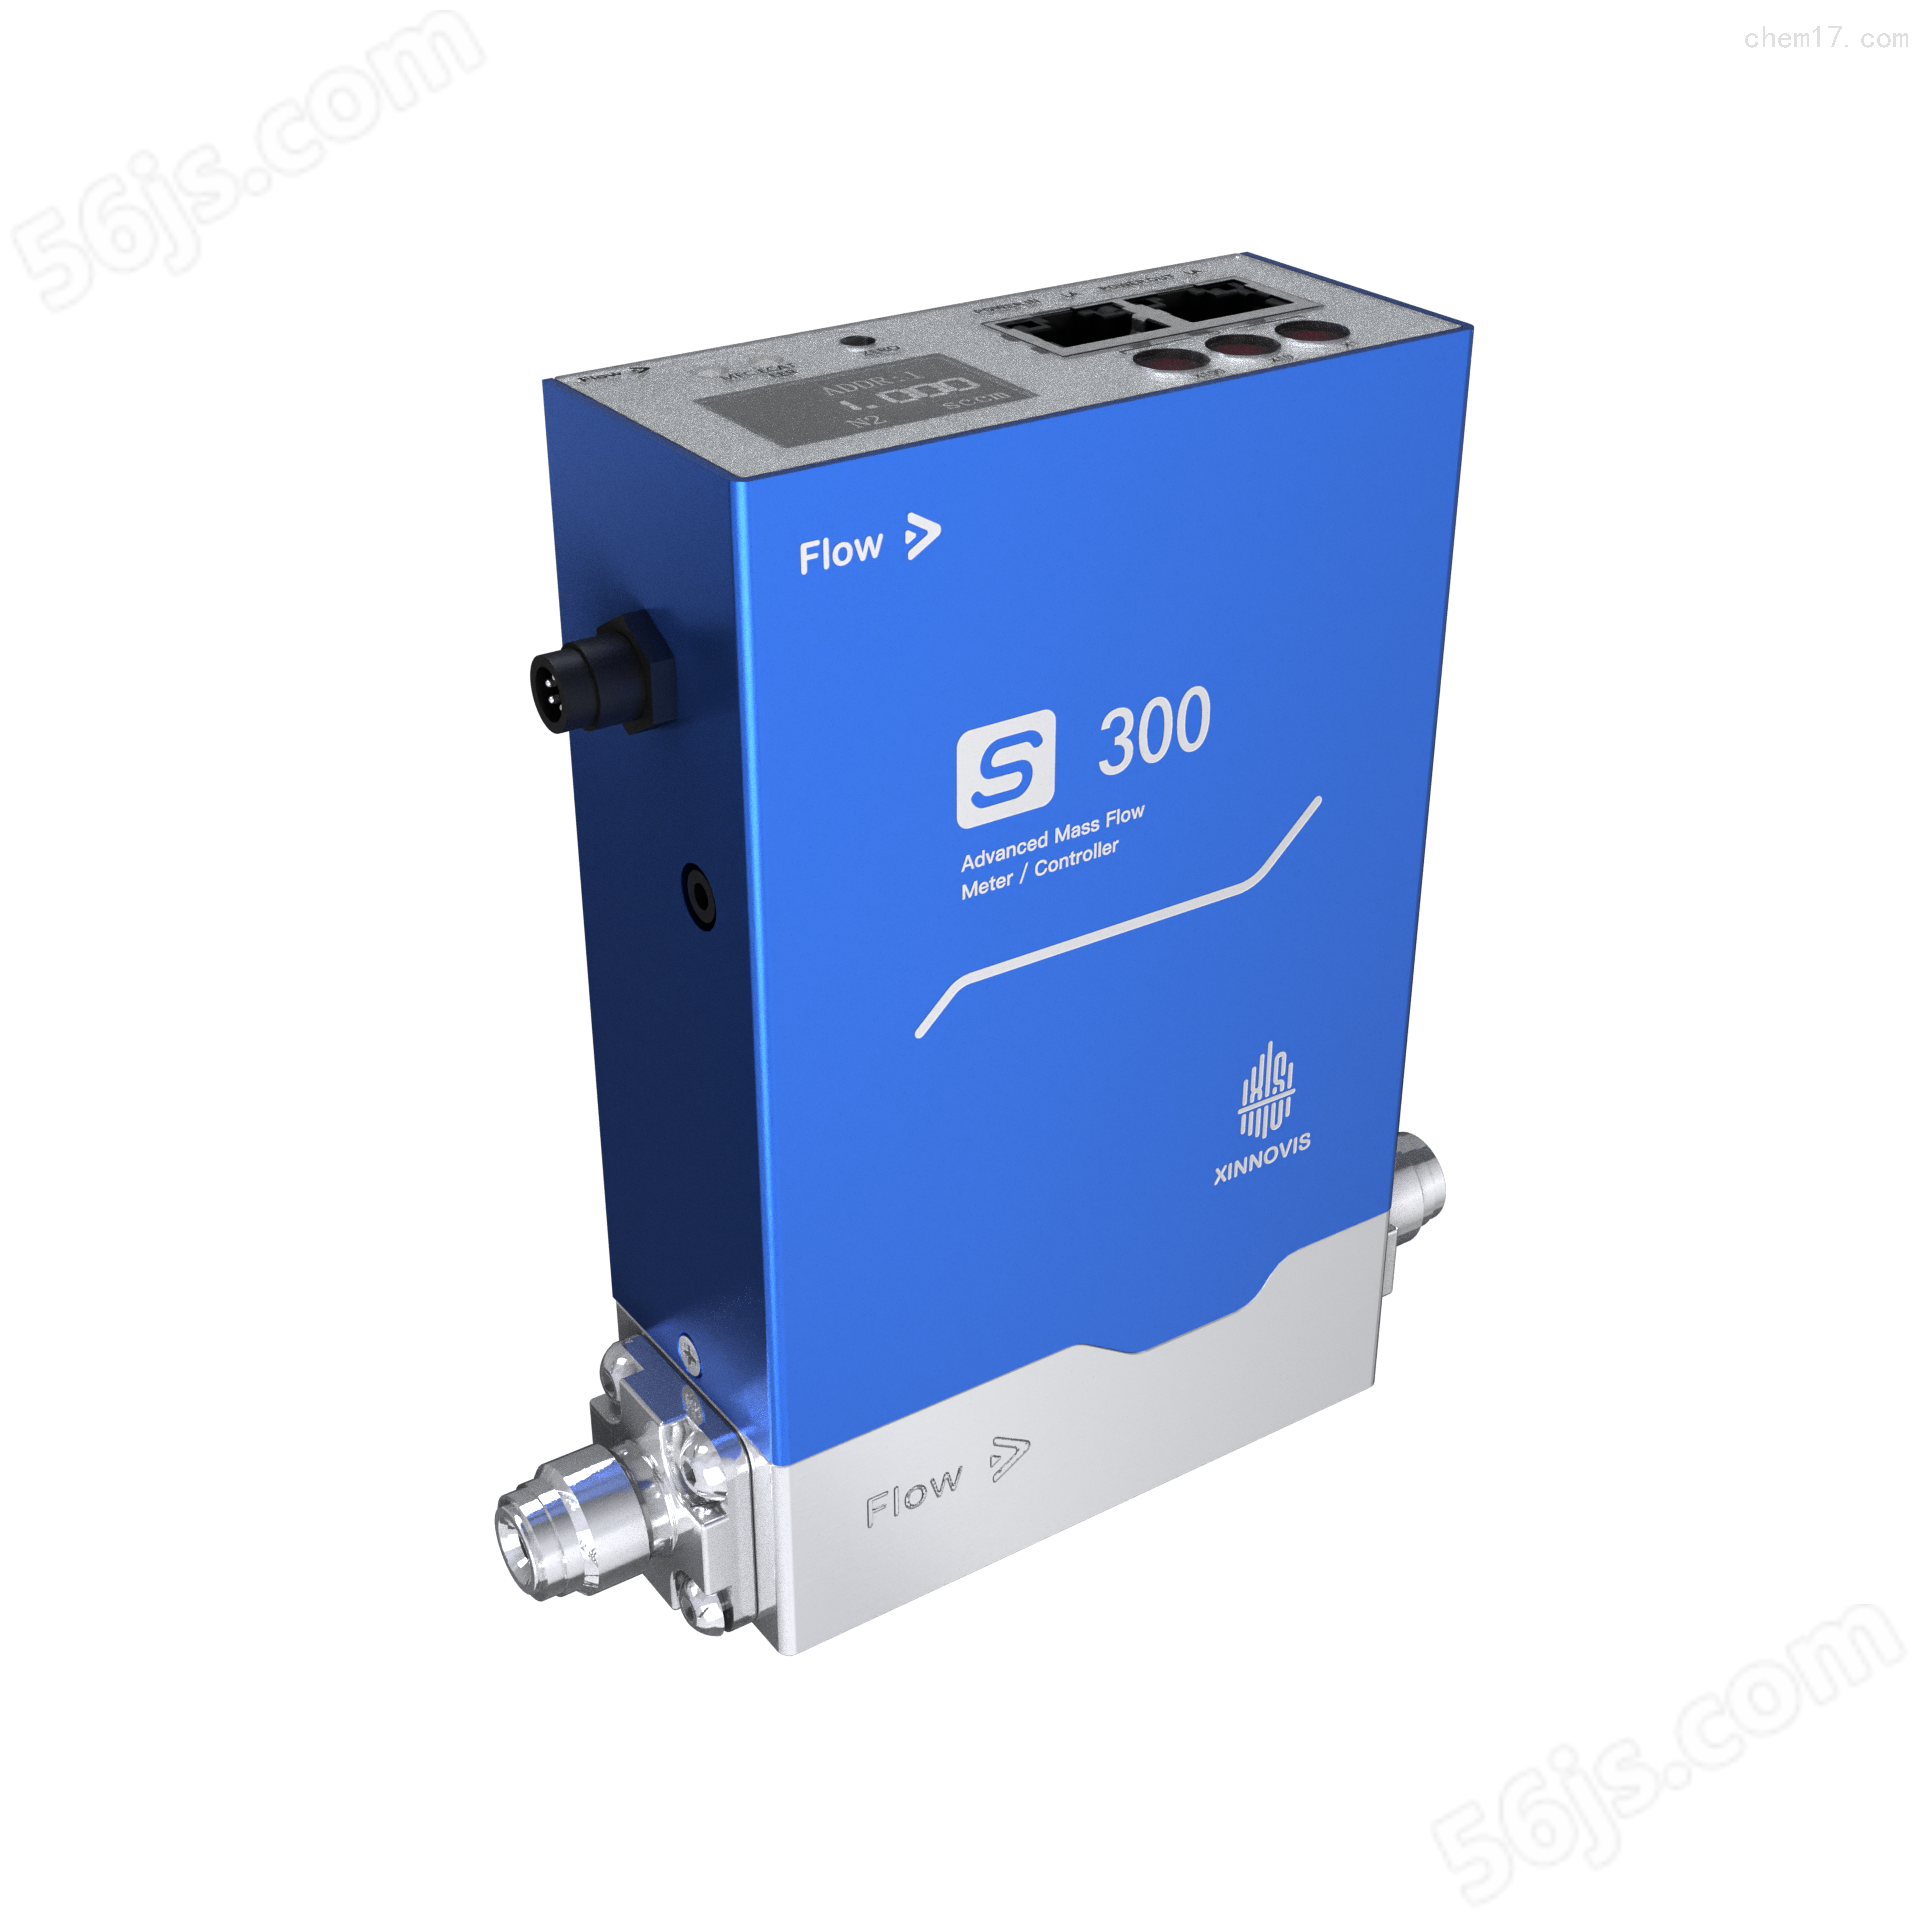 国产气体质量流量控制器s-300生产